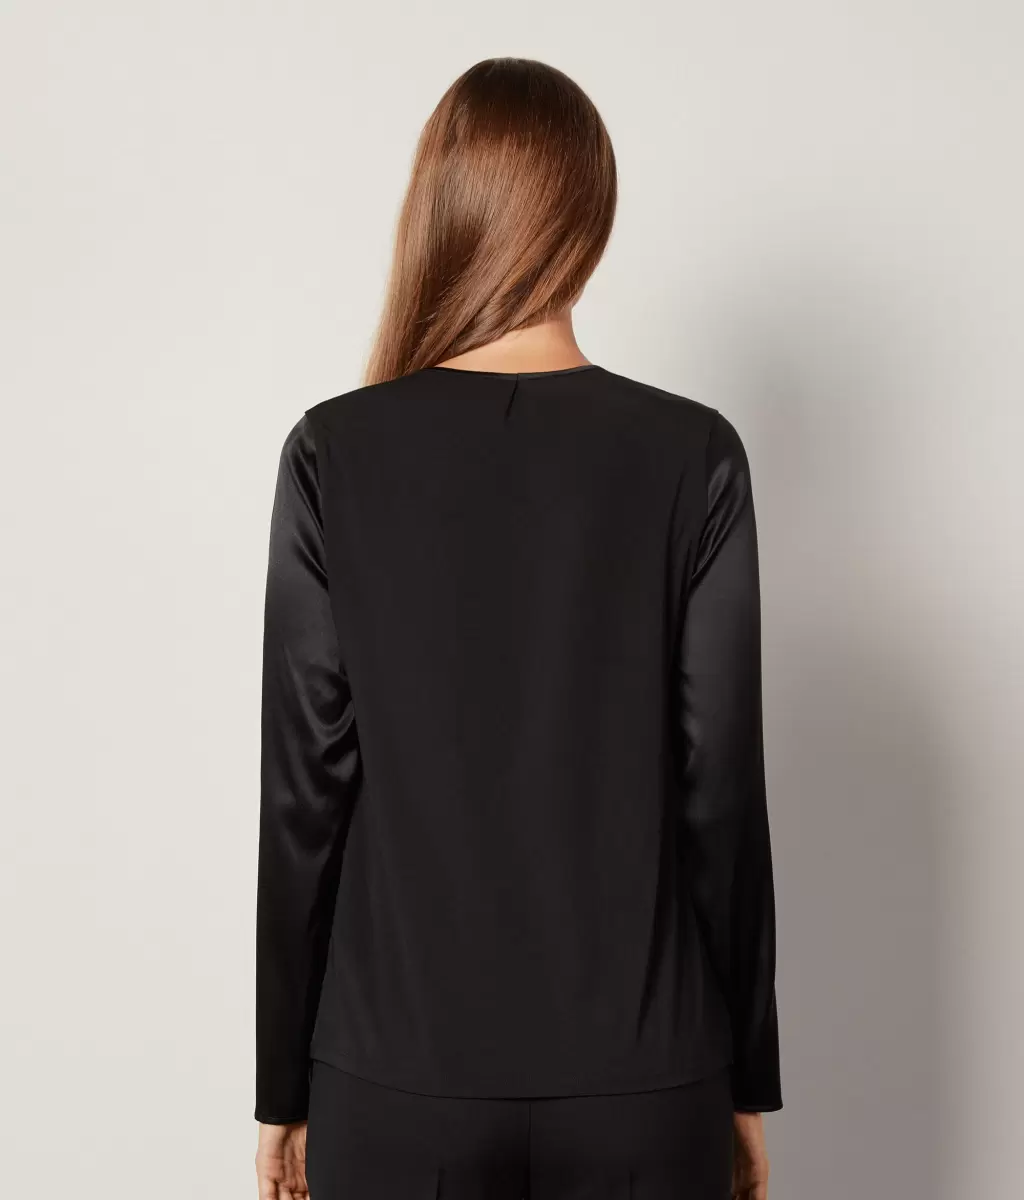 Koszule I Bluzki Kobieta Black Falconeri Bluzka Z Okrągłym Dekoltem Z Satyny Jedwabnej - 2